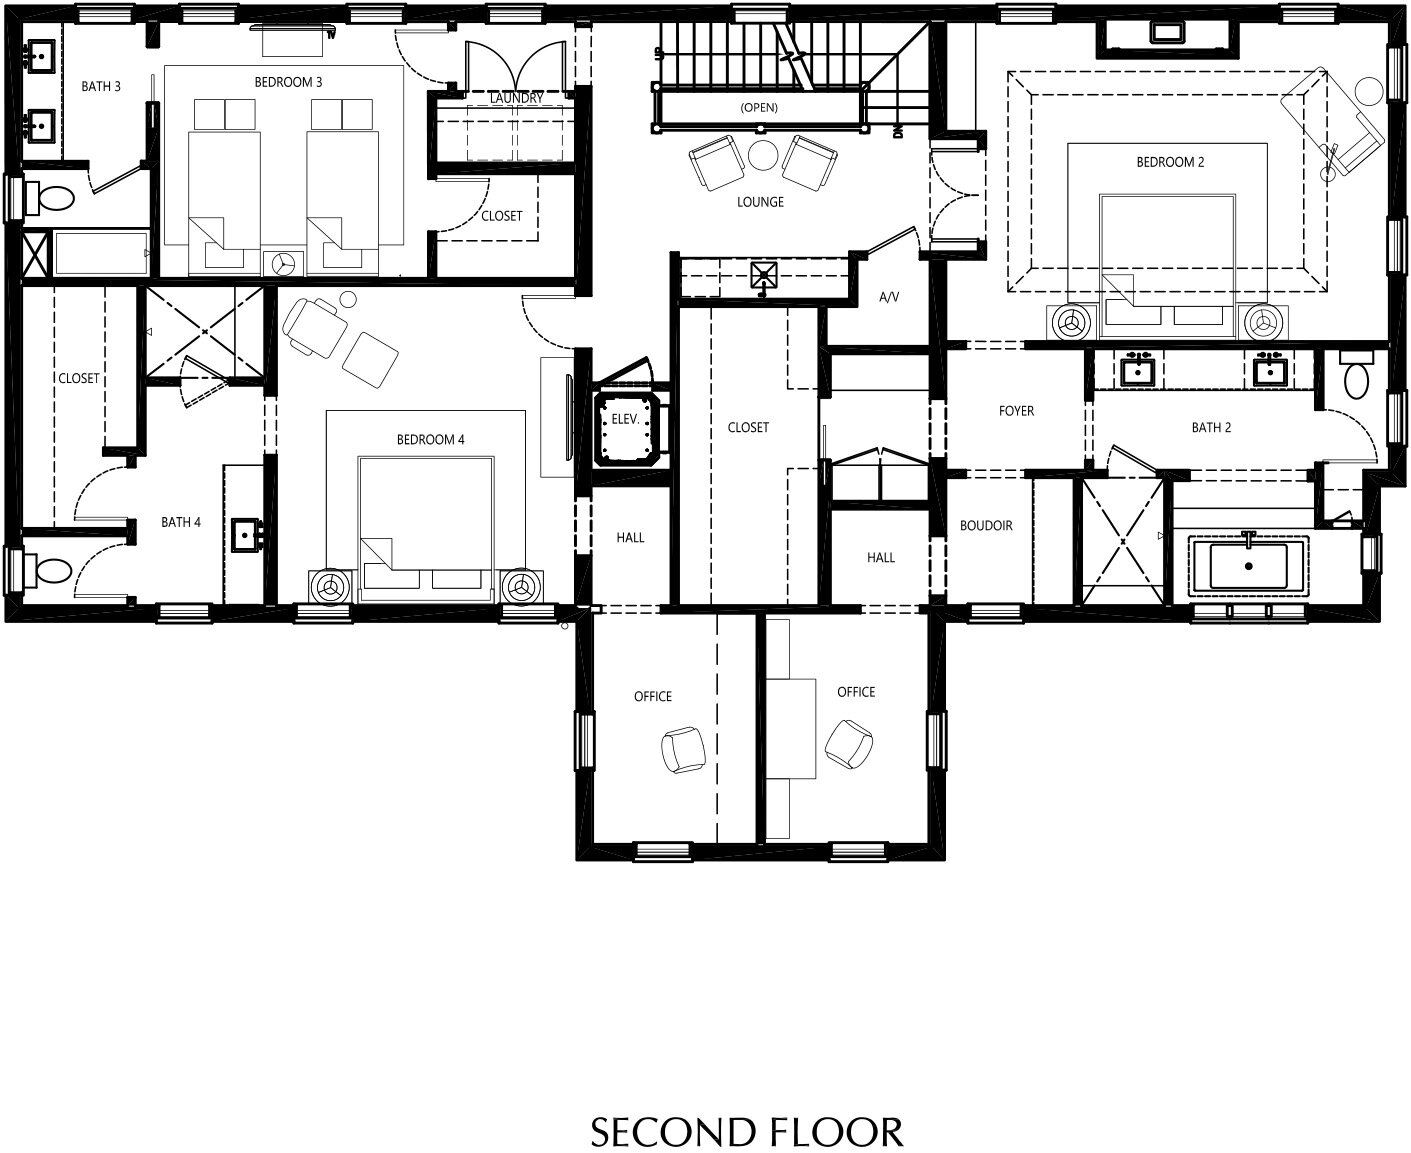 BB4_Marketing Plan-Second Floor.jpg